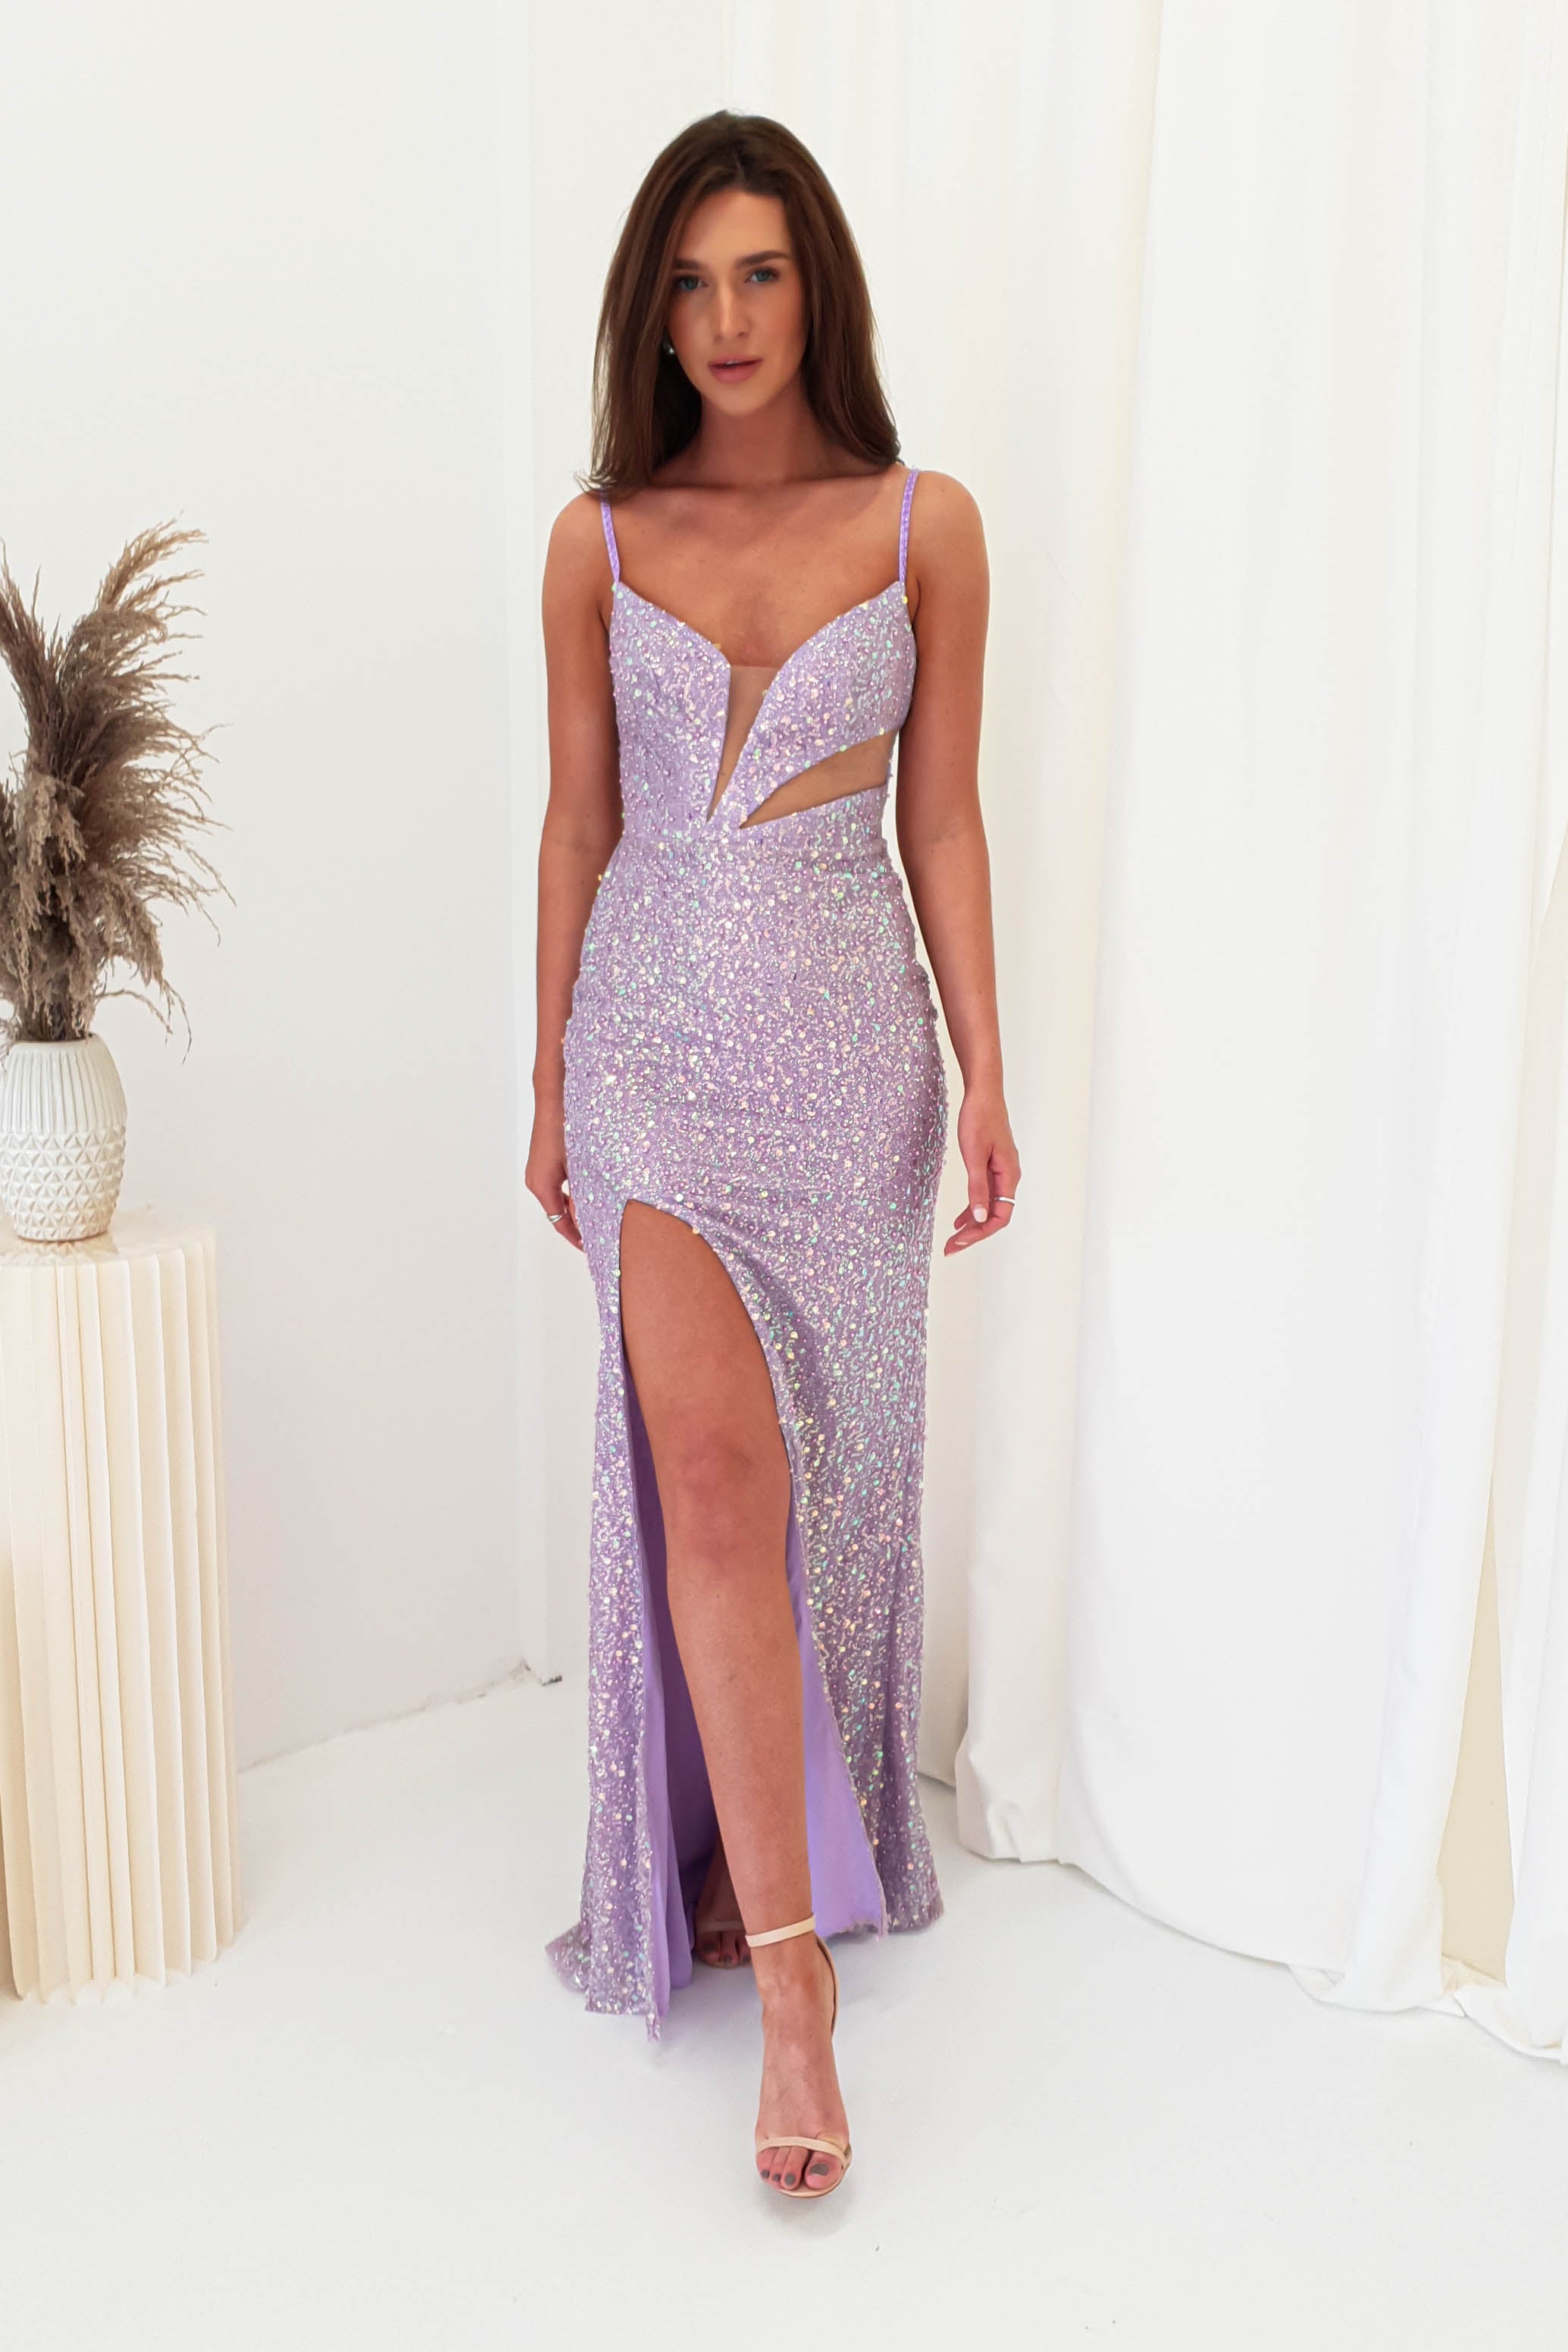 done-cd259-lavender-embellished-gown-with-mesh-bust-lavender-cind-dresses-49685483880789.jpg